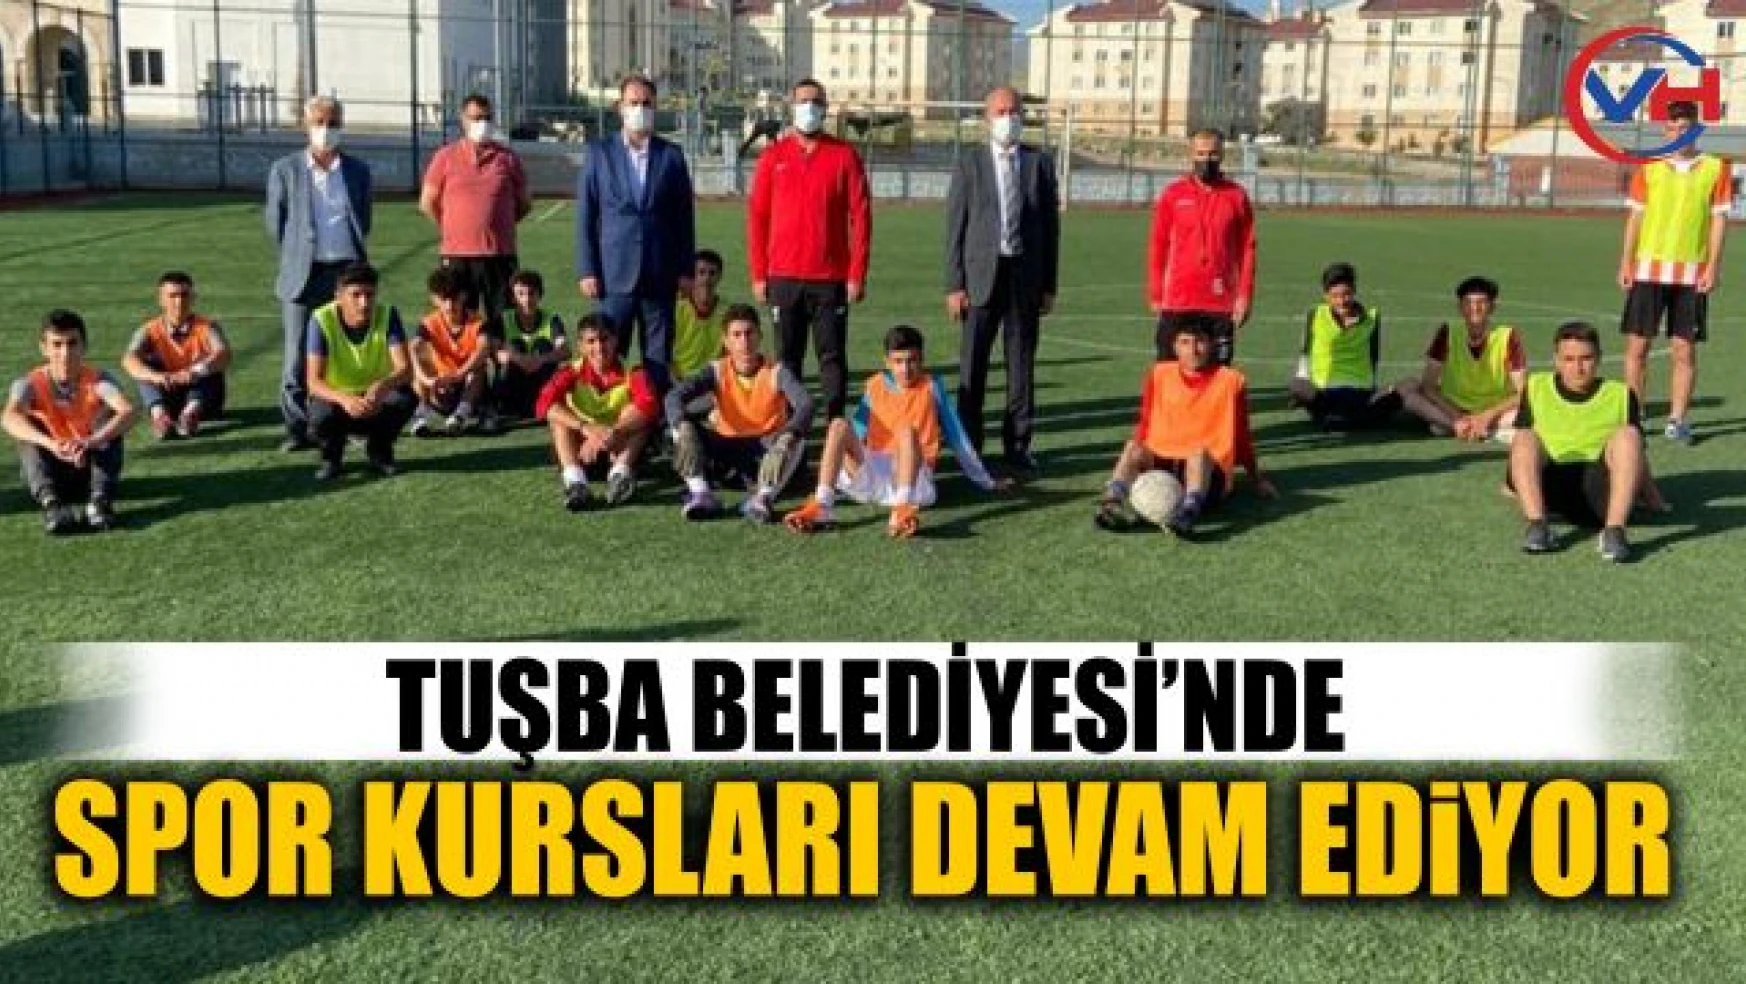 Tuşba Belediyesi spor kursları devam ediyor